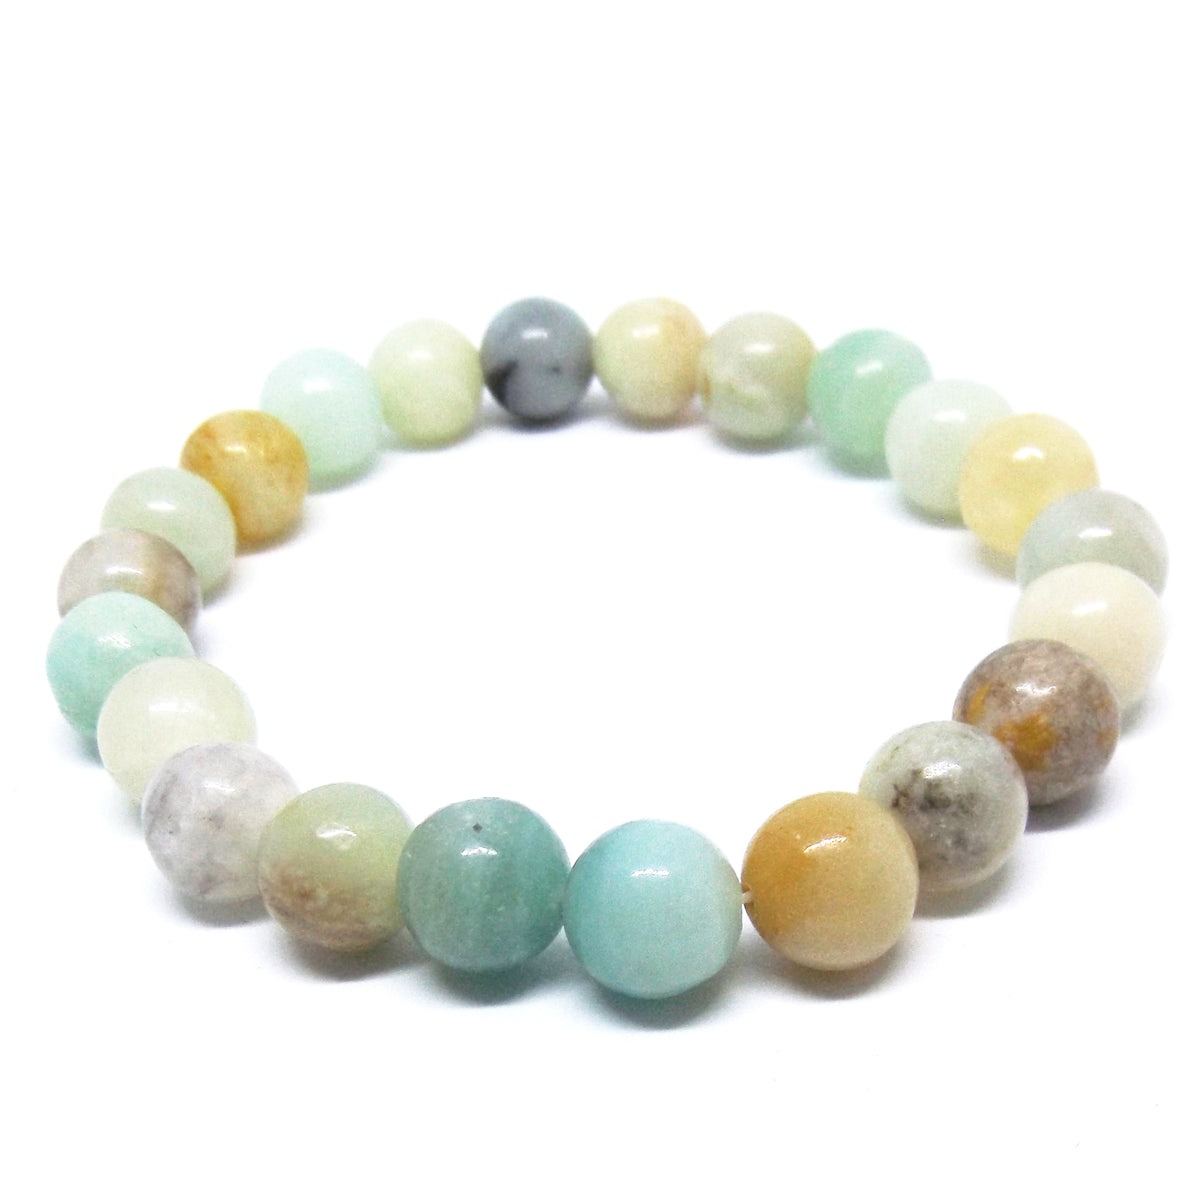 Amazonite Gemstone Healing Bracelet For Harmony – Eluna Jewelry Designs